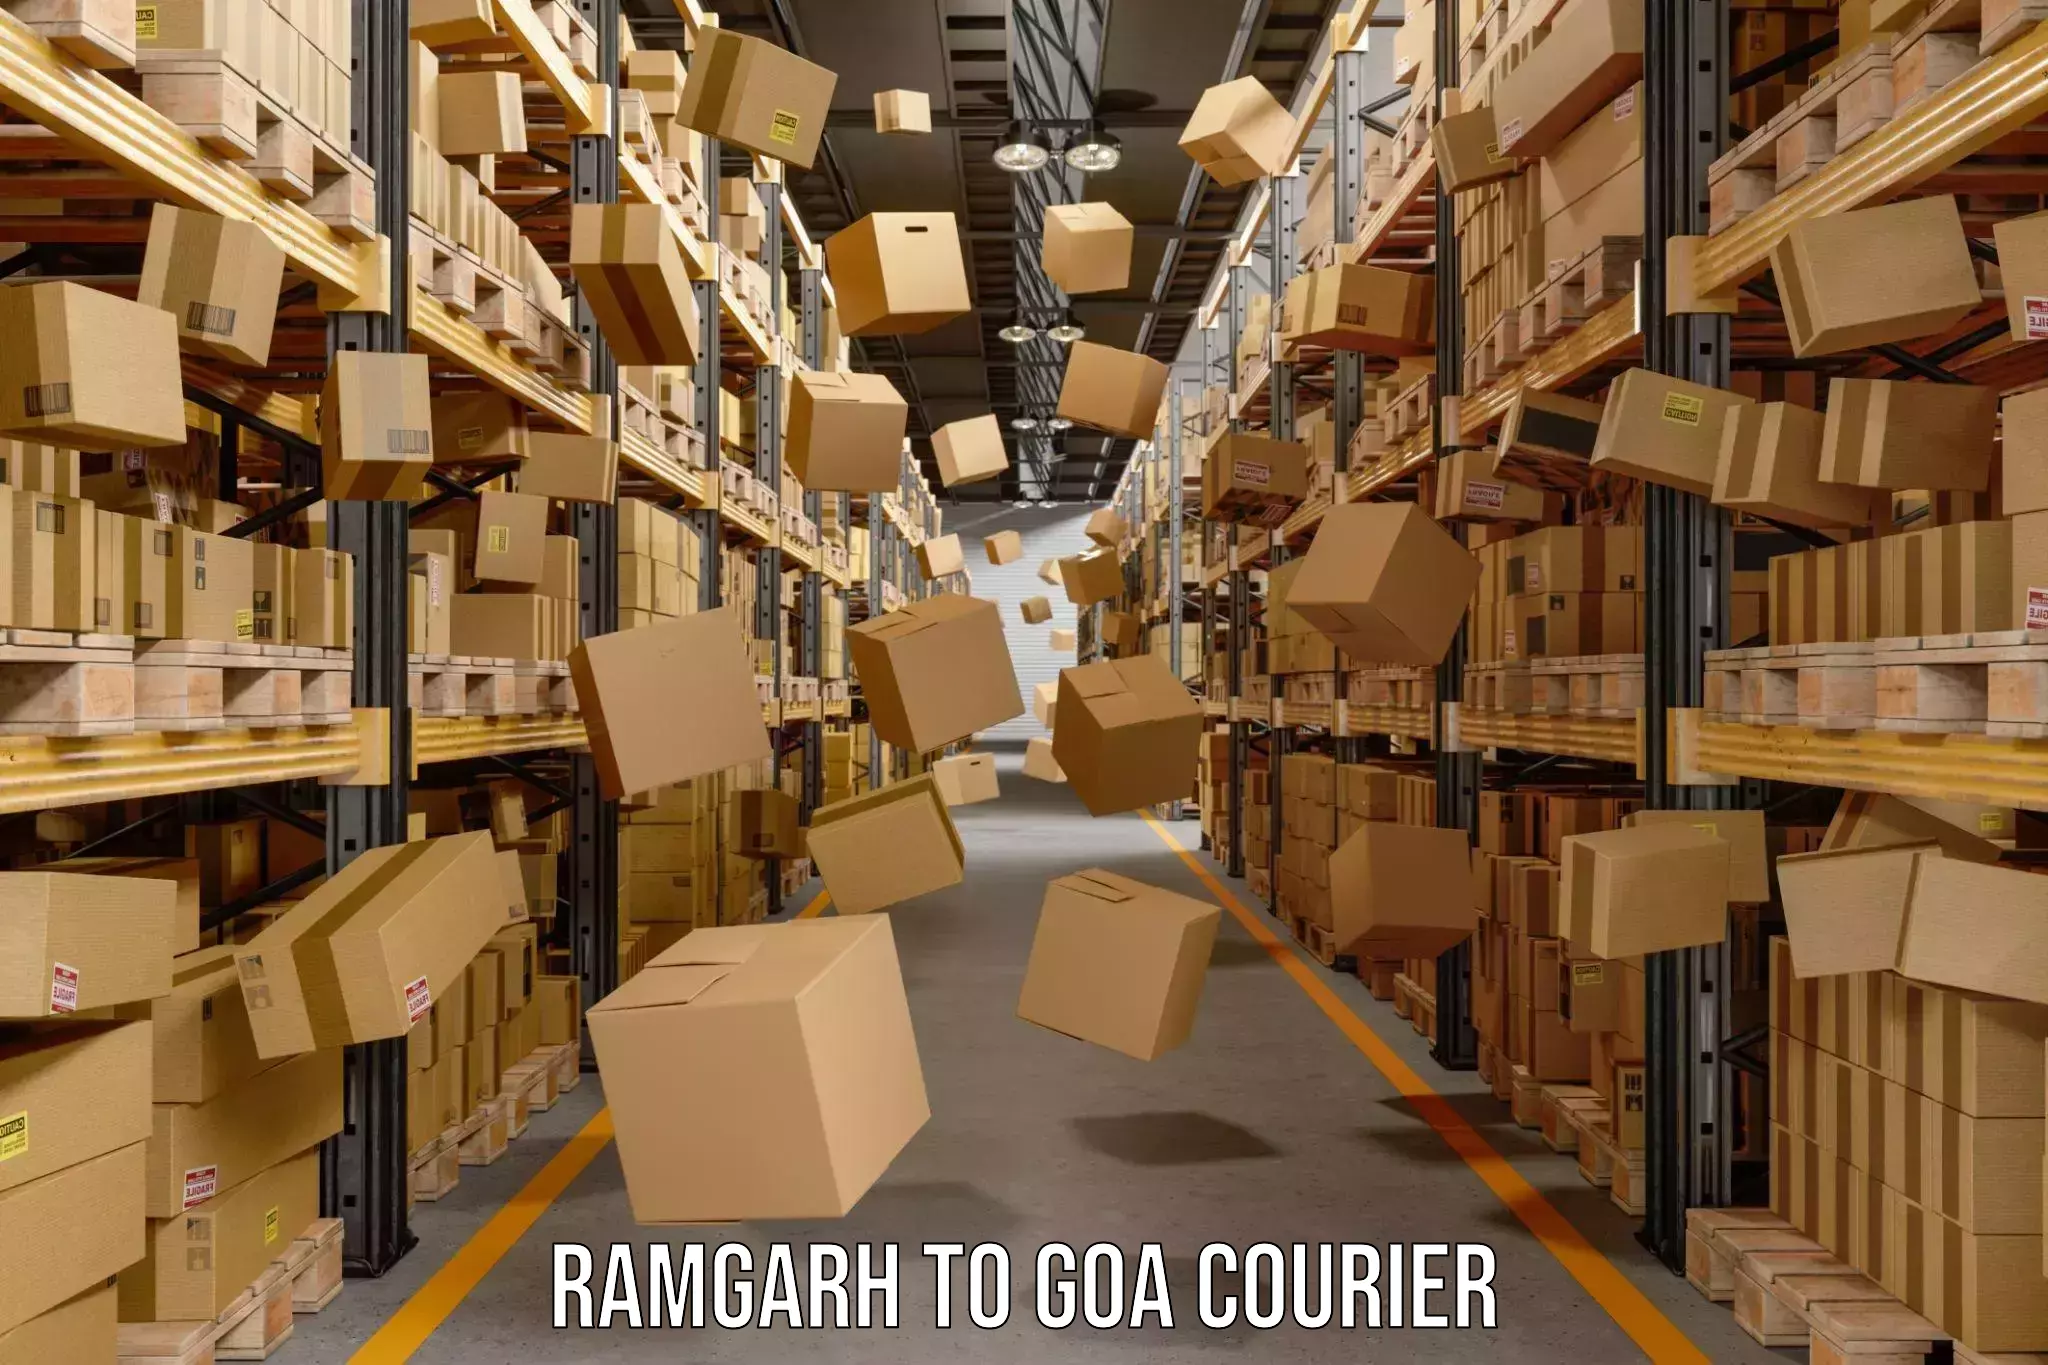 Nationwide shipping capabilities Ramgarh to Goa